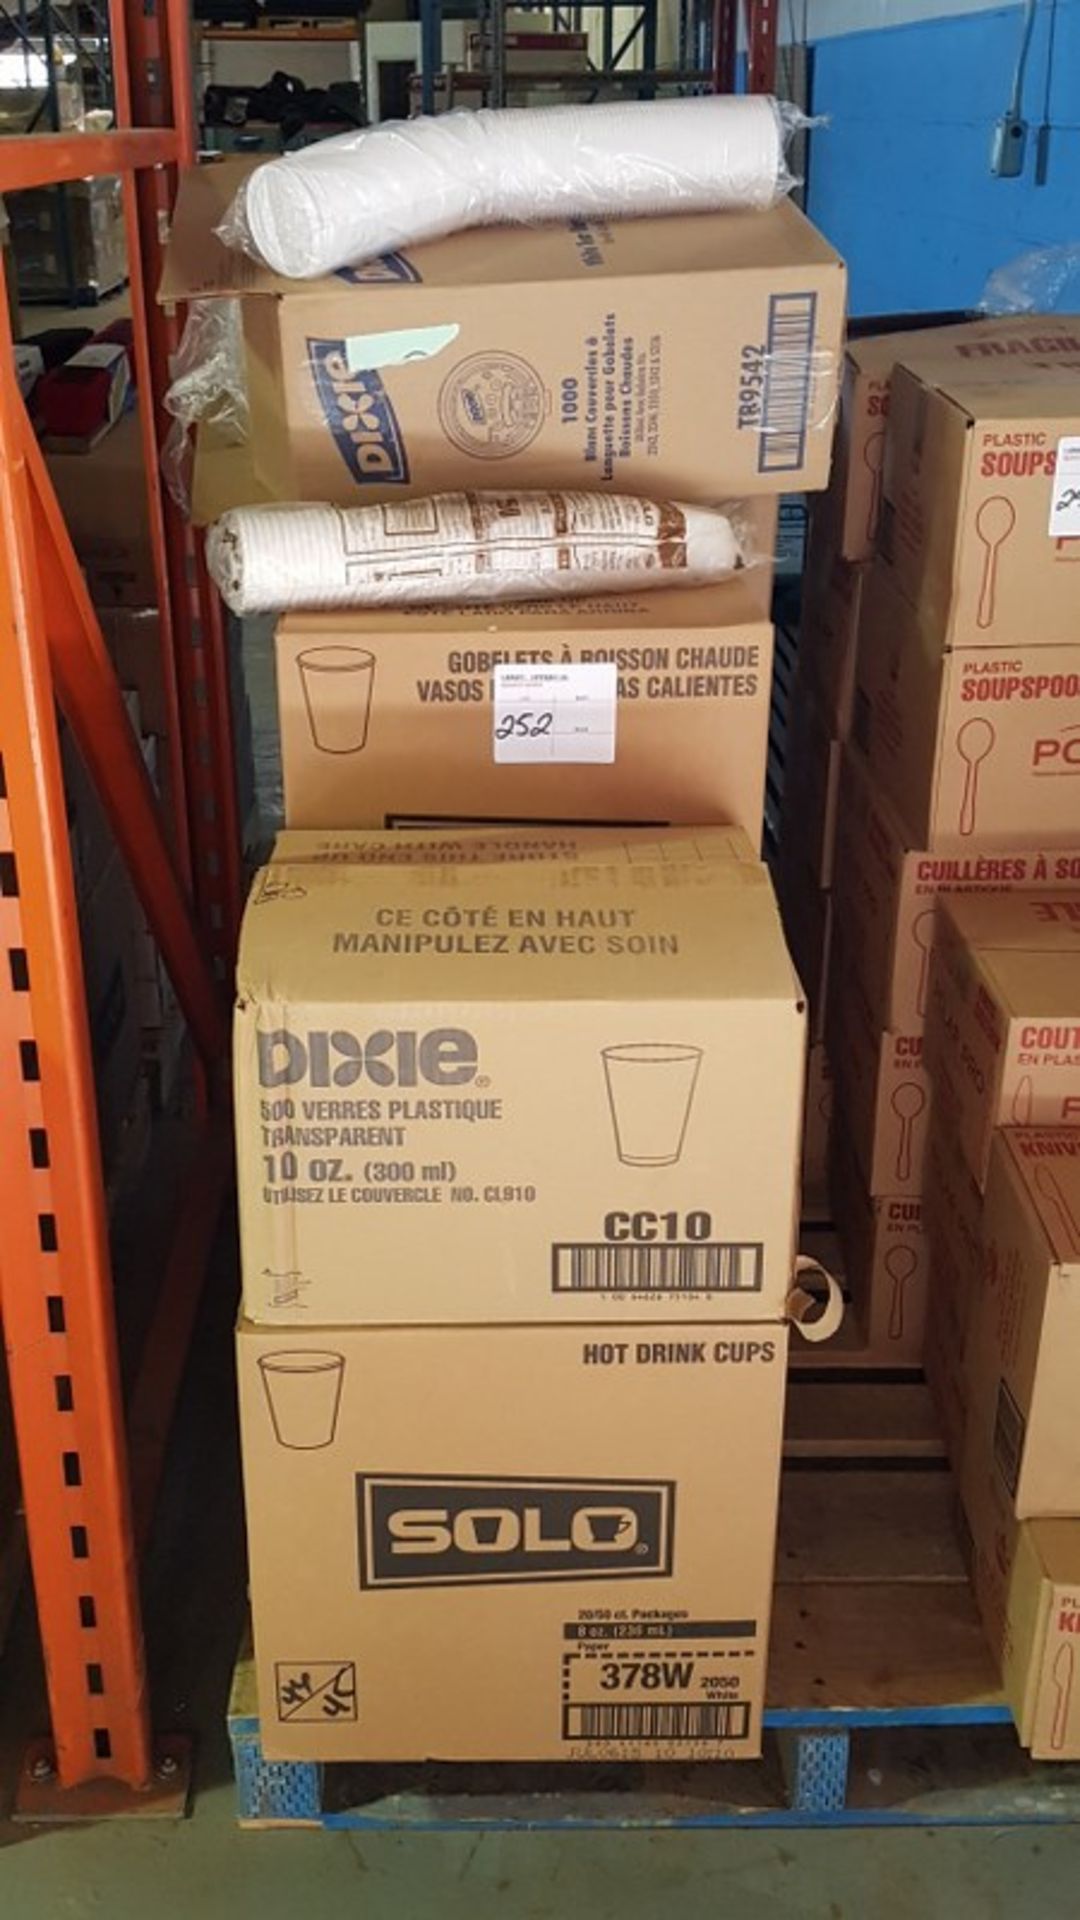 DIXIE TRANSPARENT PLASTIC CUPS 10OZ - 1 BOX x 20/BOX X 25PCS, HOT DRINK CUPS 8OZ - 3 BOXES x 20/